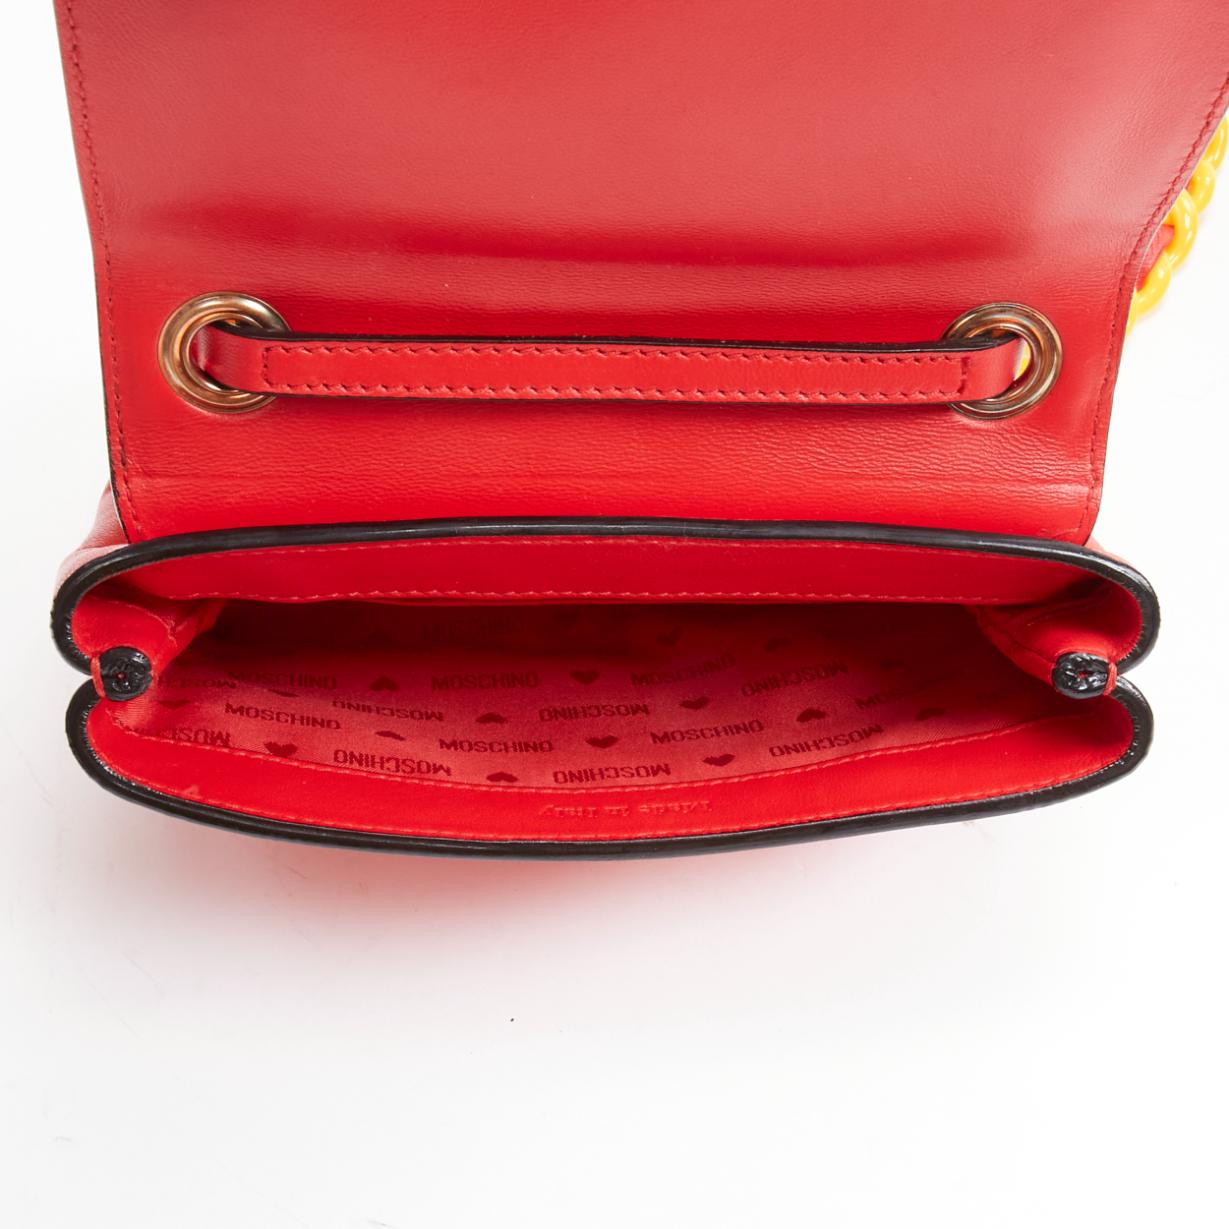 MOSCHINO Jeremy Scott 2014 Crossbody aus rot-gelber Kunststoffkette  Tasche 6